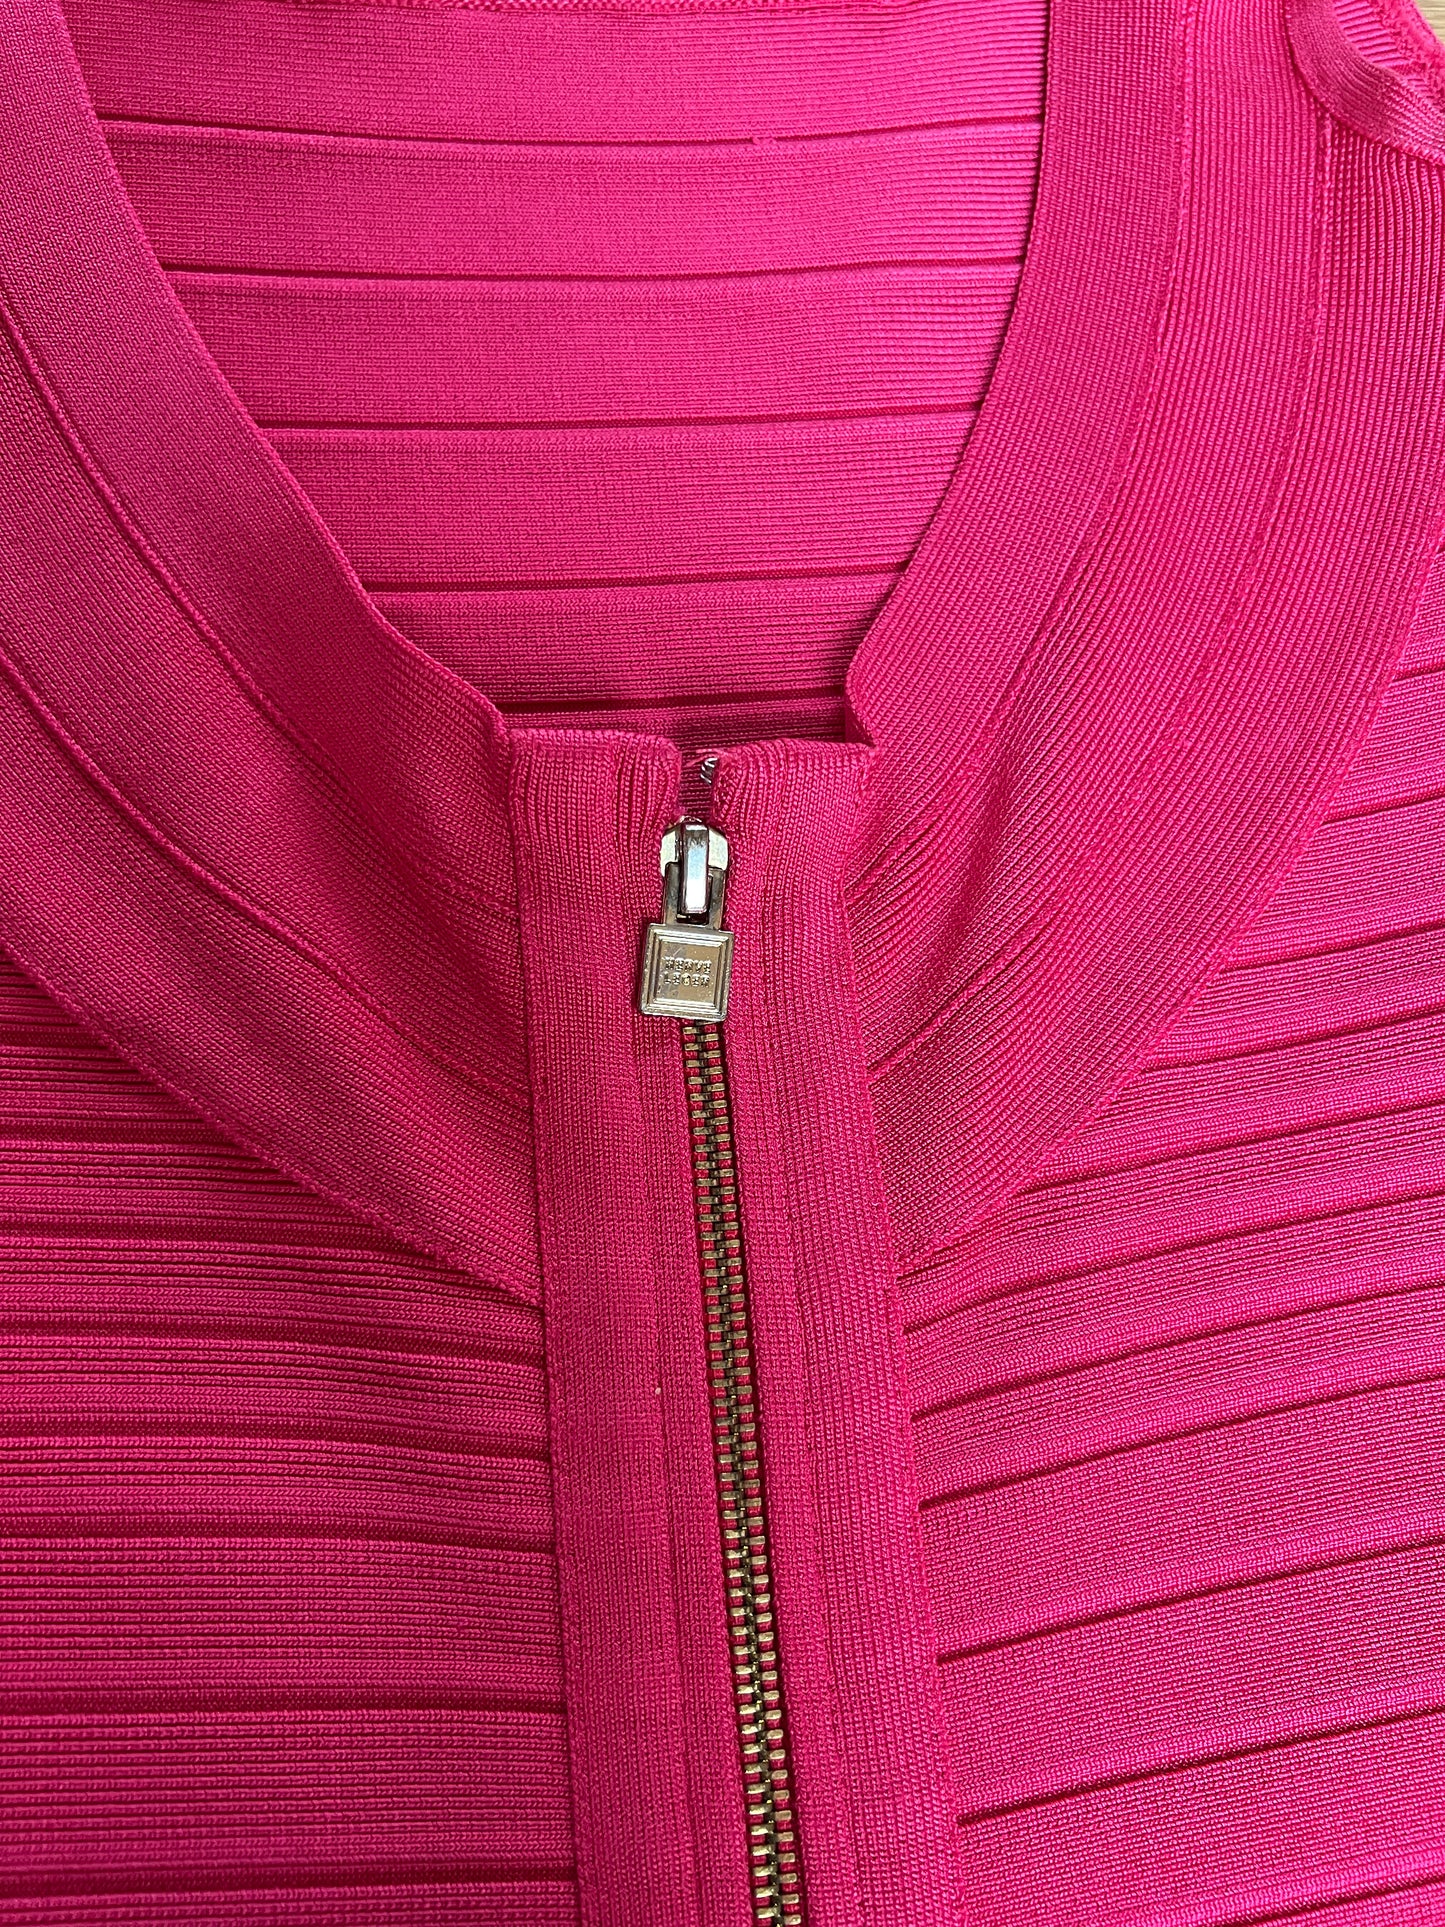 Pink Bandage Dress - XS